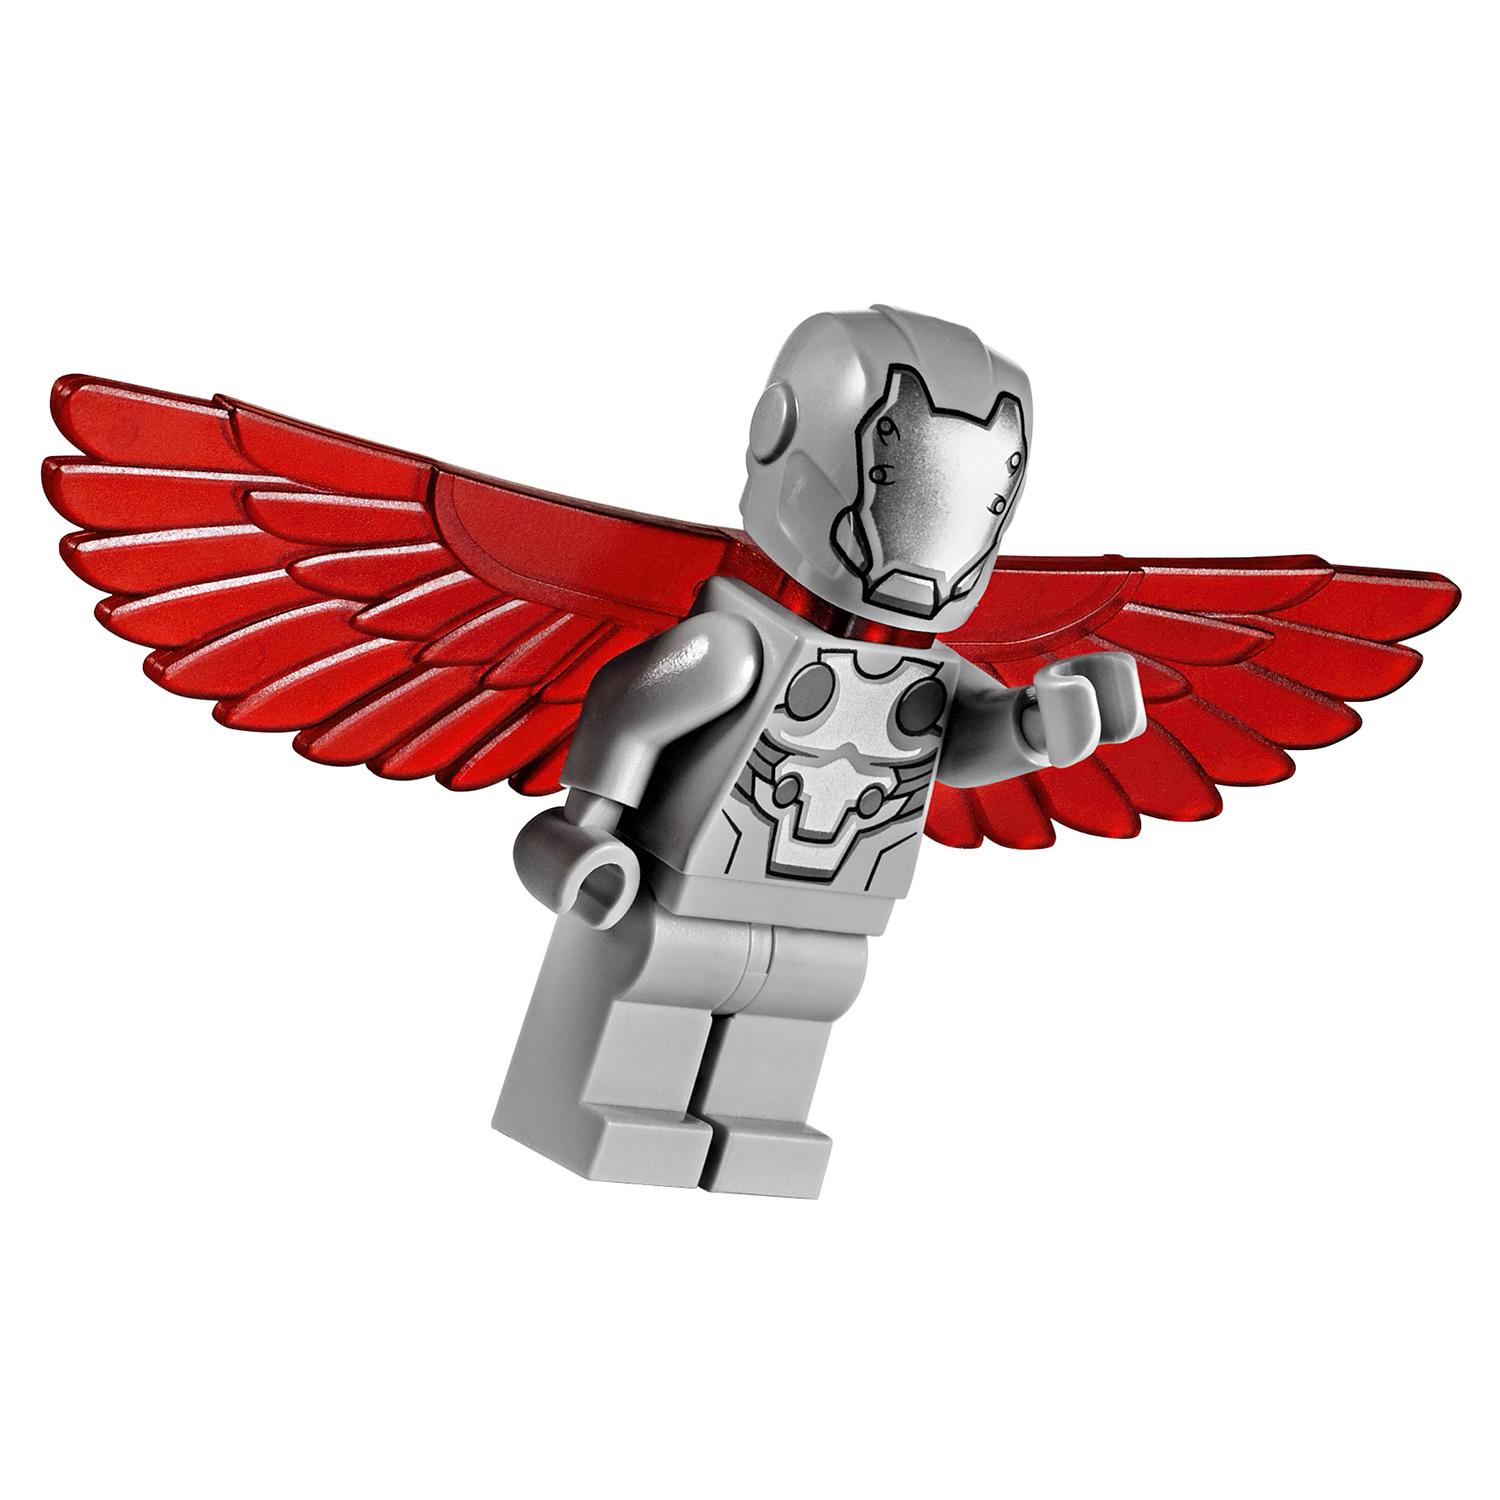 Lego Super Heroes 76076 Воздушная погоня Капитана Америка